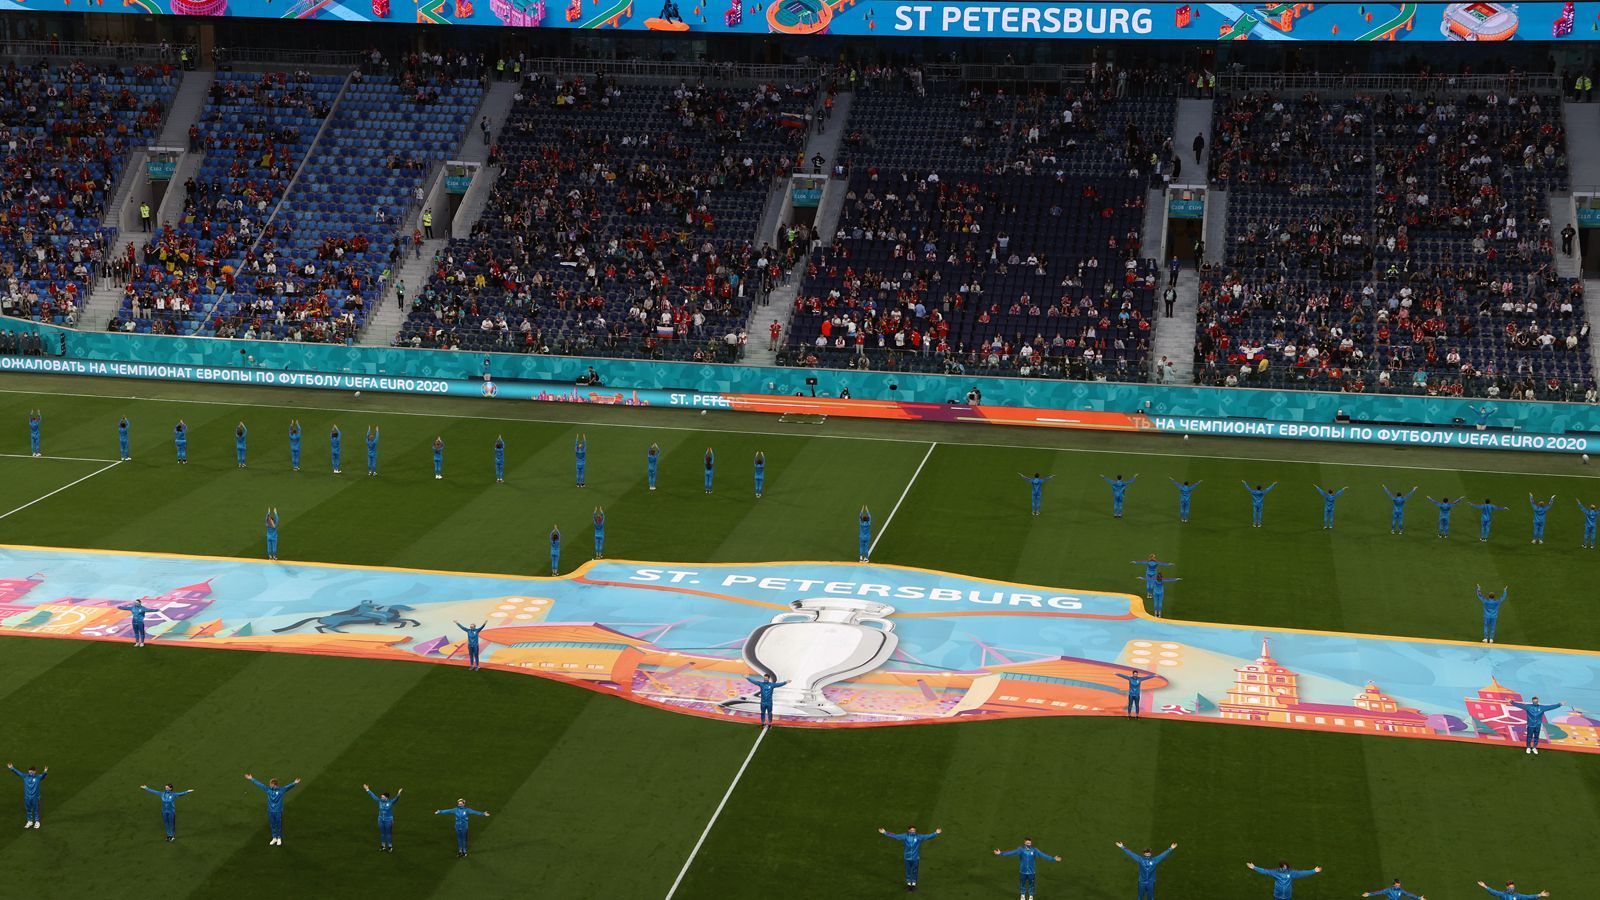 
                <strong>St. Petersburg als Schauplatz des Abendspiels</strong><br>
                In St. Petersburg empfangen die Russen die Nationalmannschaft Belgiens zum Abendspiel des zweiten EM-Tages. 
              